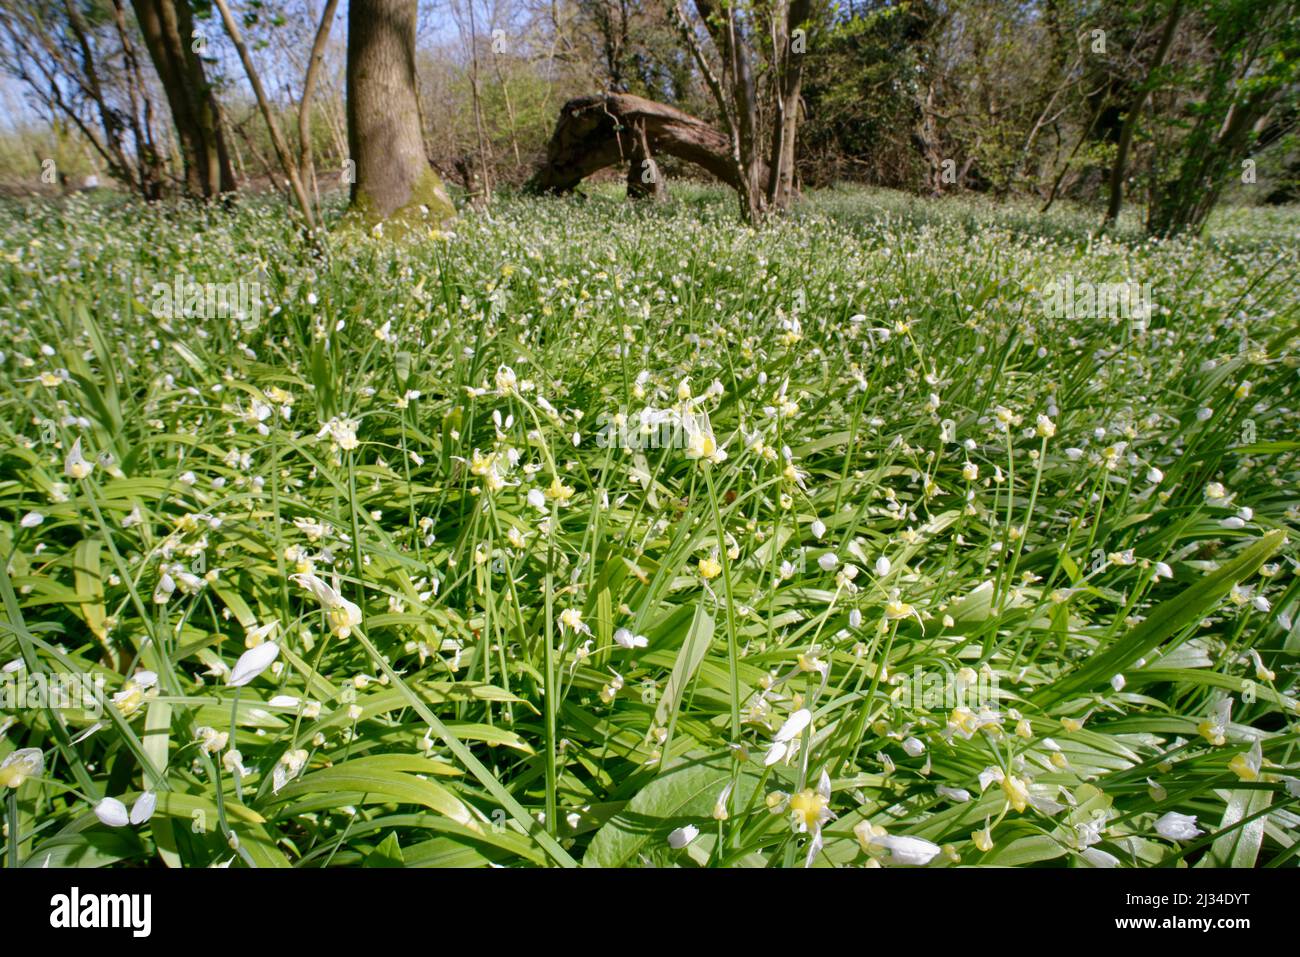 Leek à fleurs rares (Allium paradoxum) une espèce très envahissante, qui pousse dans un tapis dense et étouffant dans les bois, Claverton Down, Bath, Royaume-Uni, avril. Banque D'Images